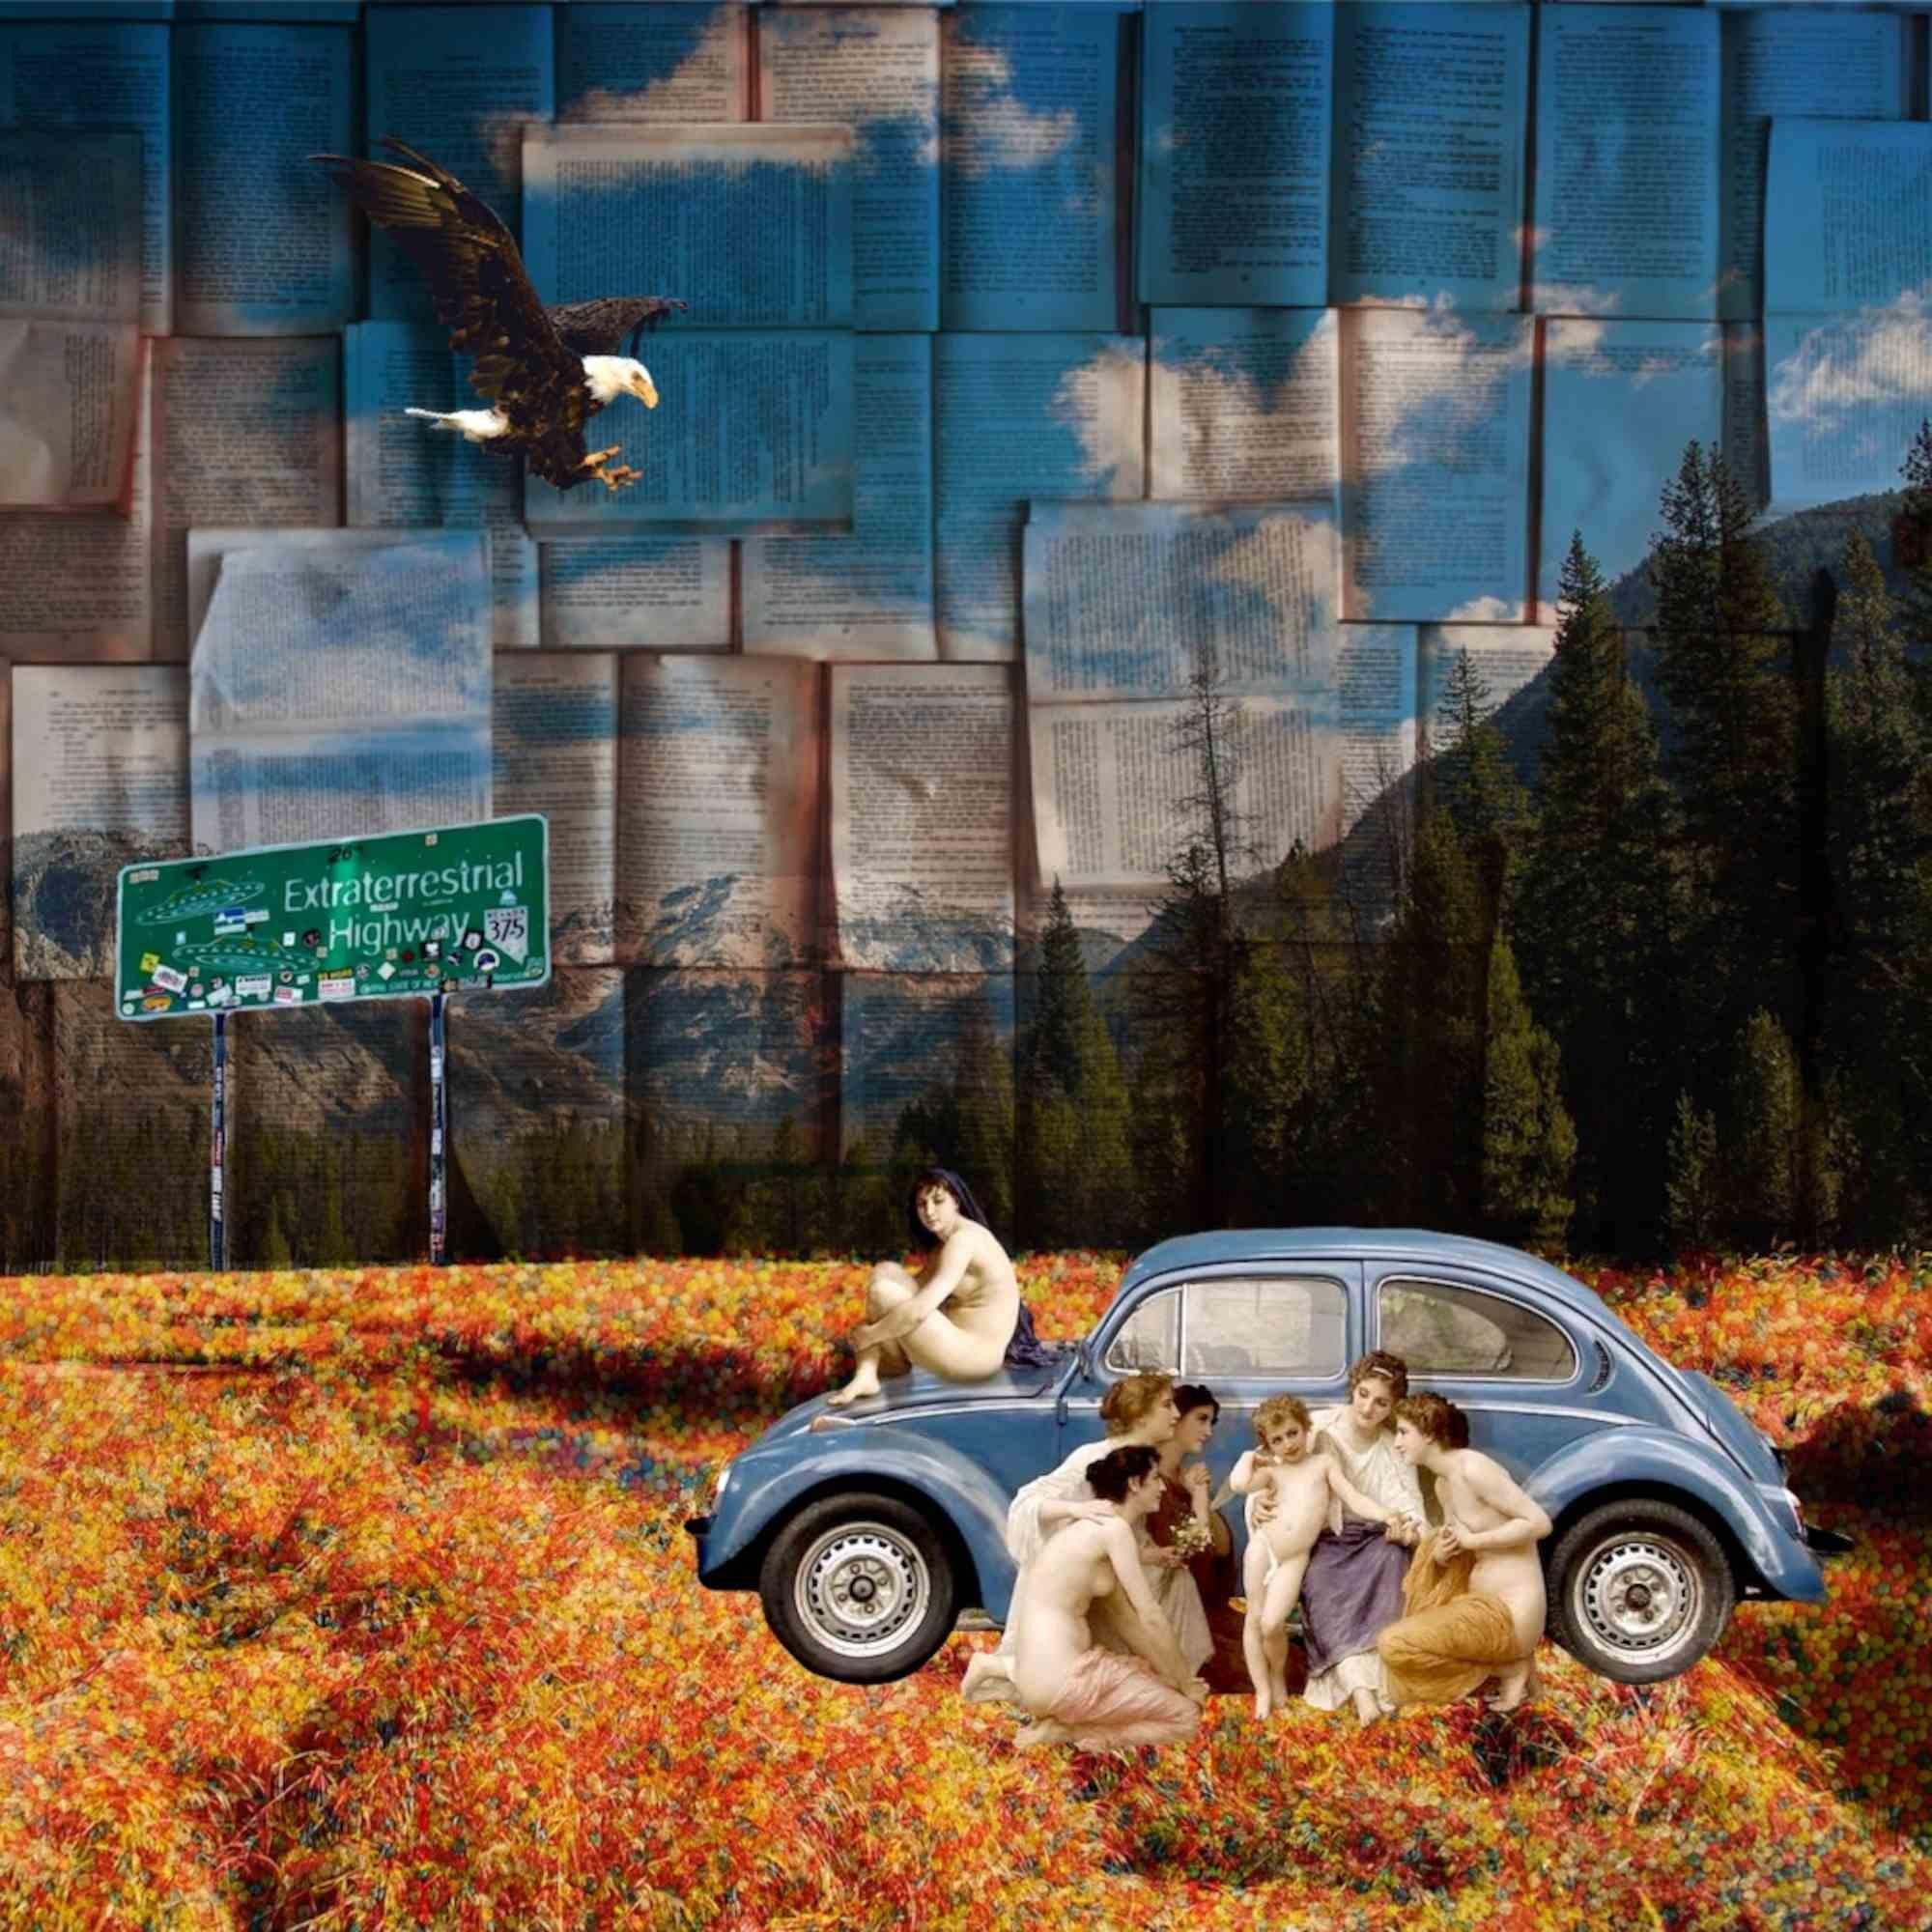 Digitale Collage "Exterrestrial Highway" von Chiara Santoro -2020